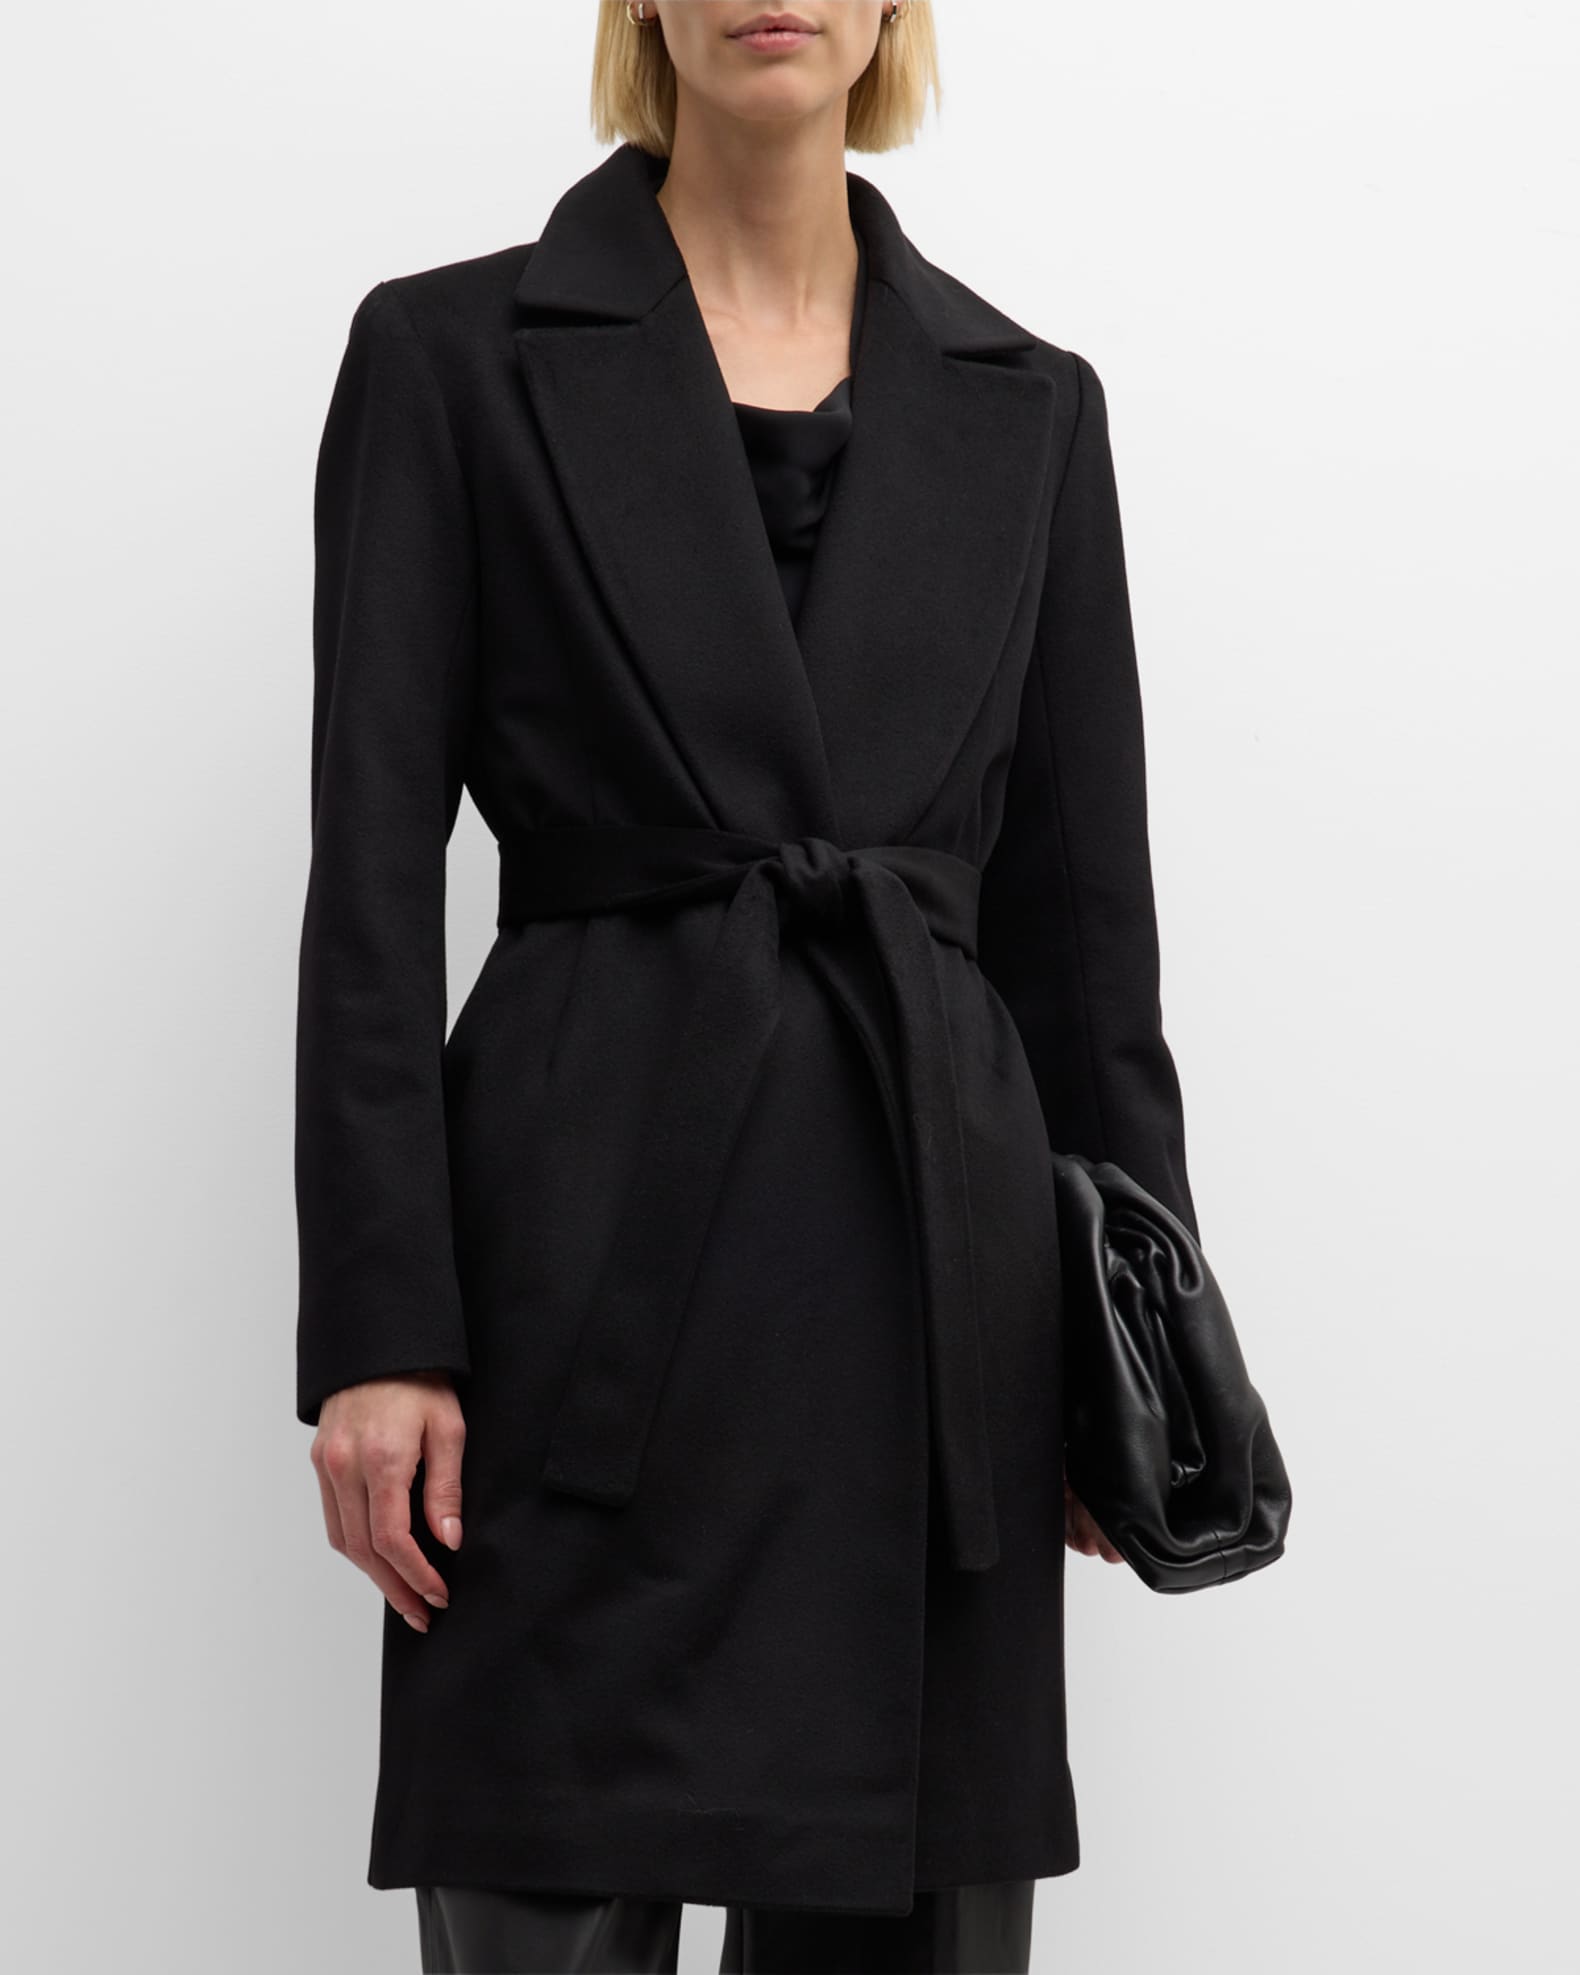 Louis Vuitton Multicolor Tulle Jacket, Women's Fashion, Coats